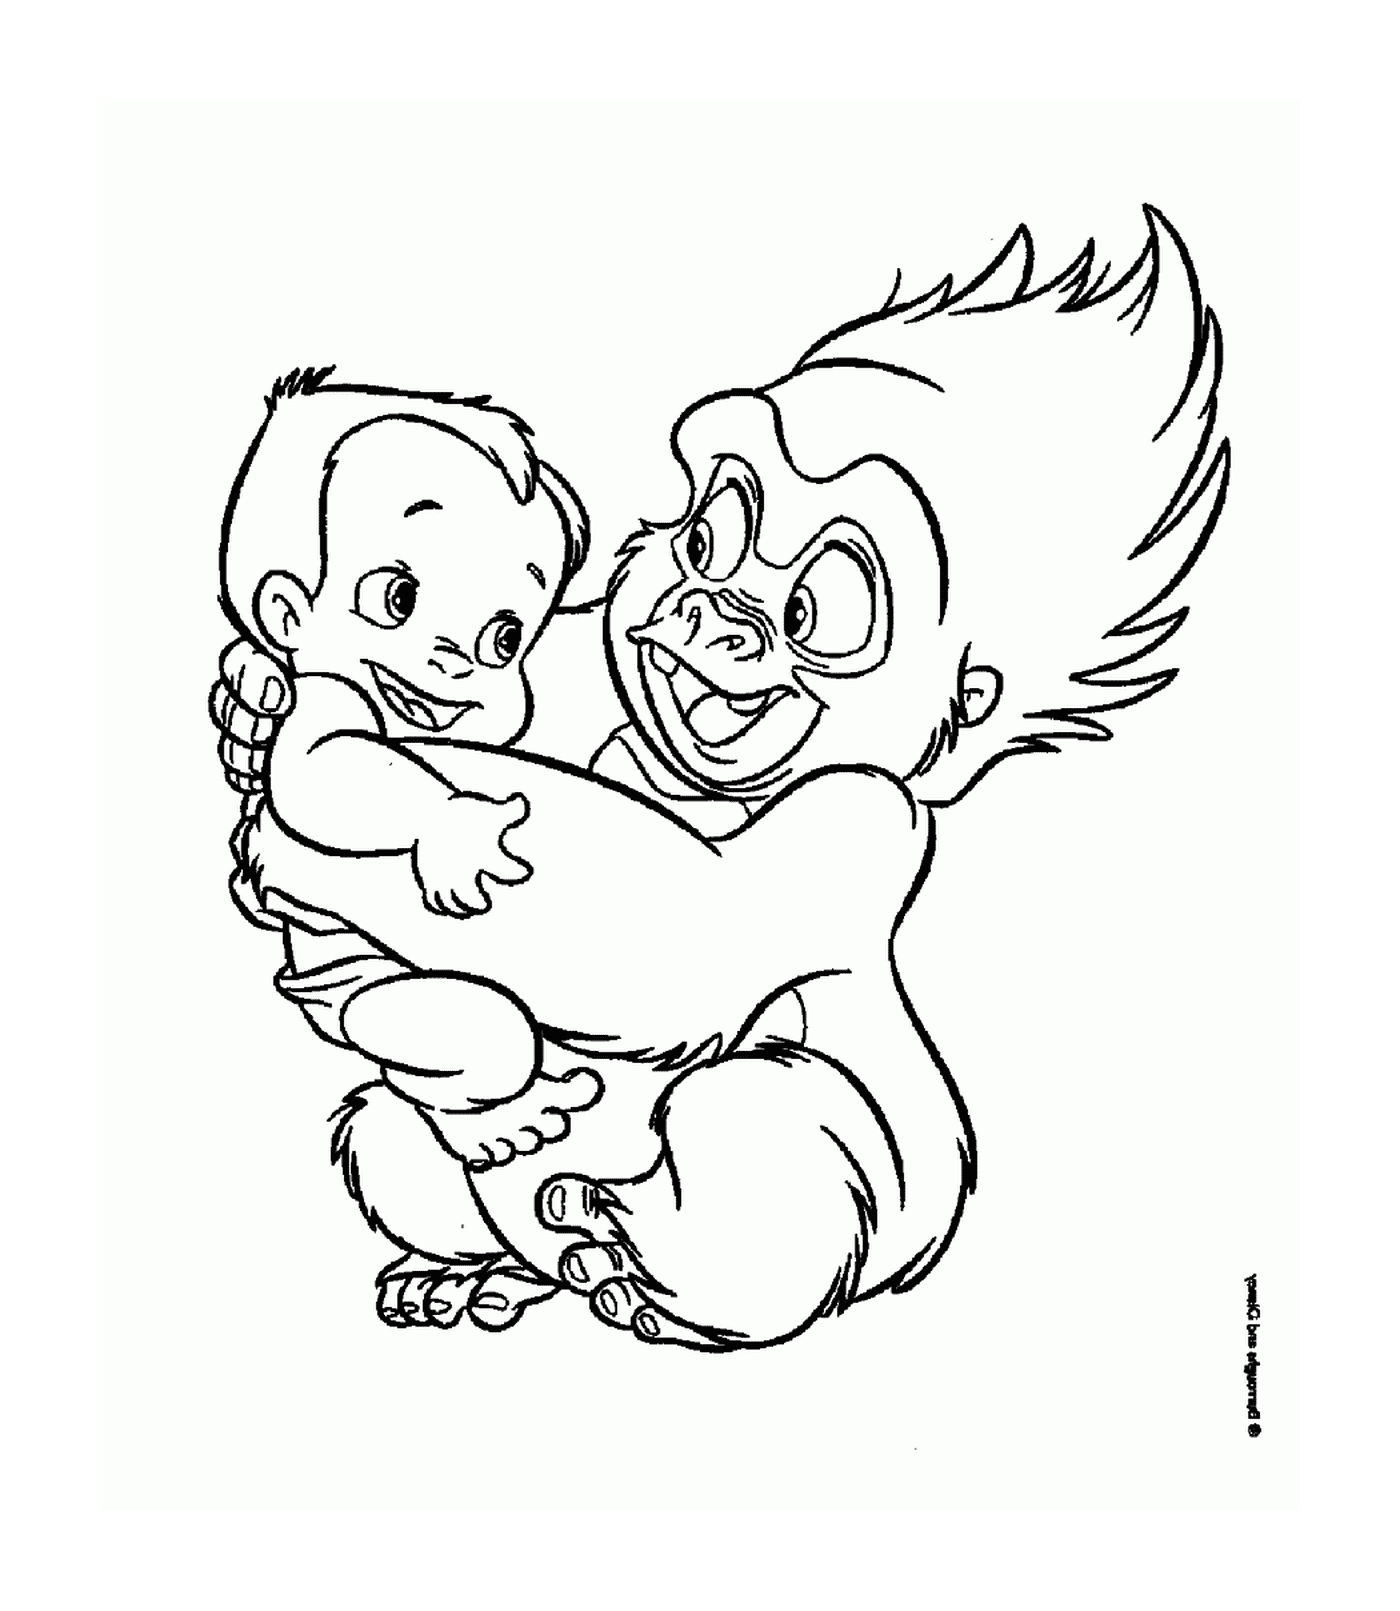  Il gorilla adulto e bambino si abbraccia 